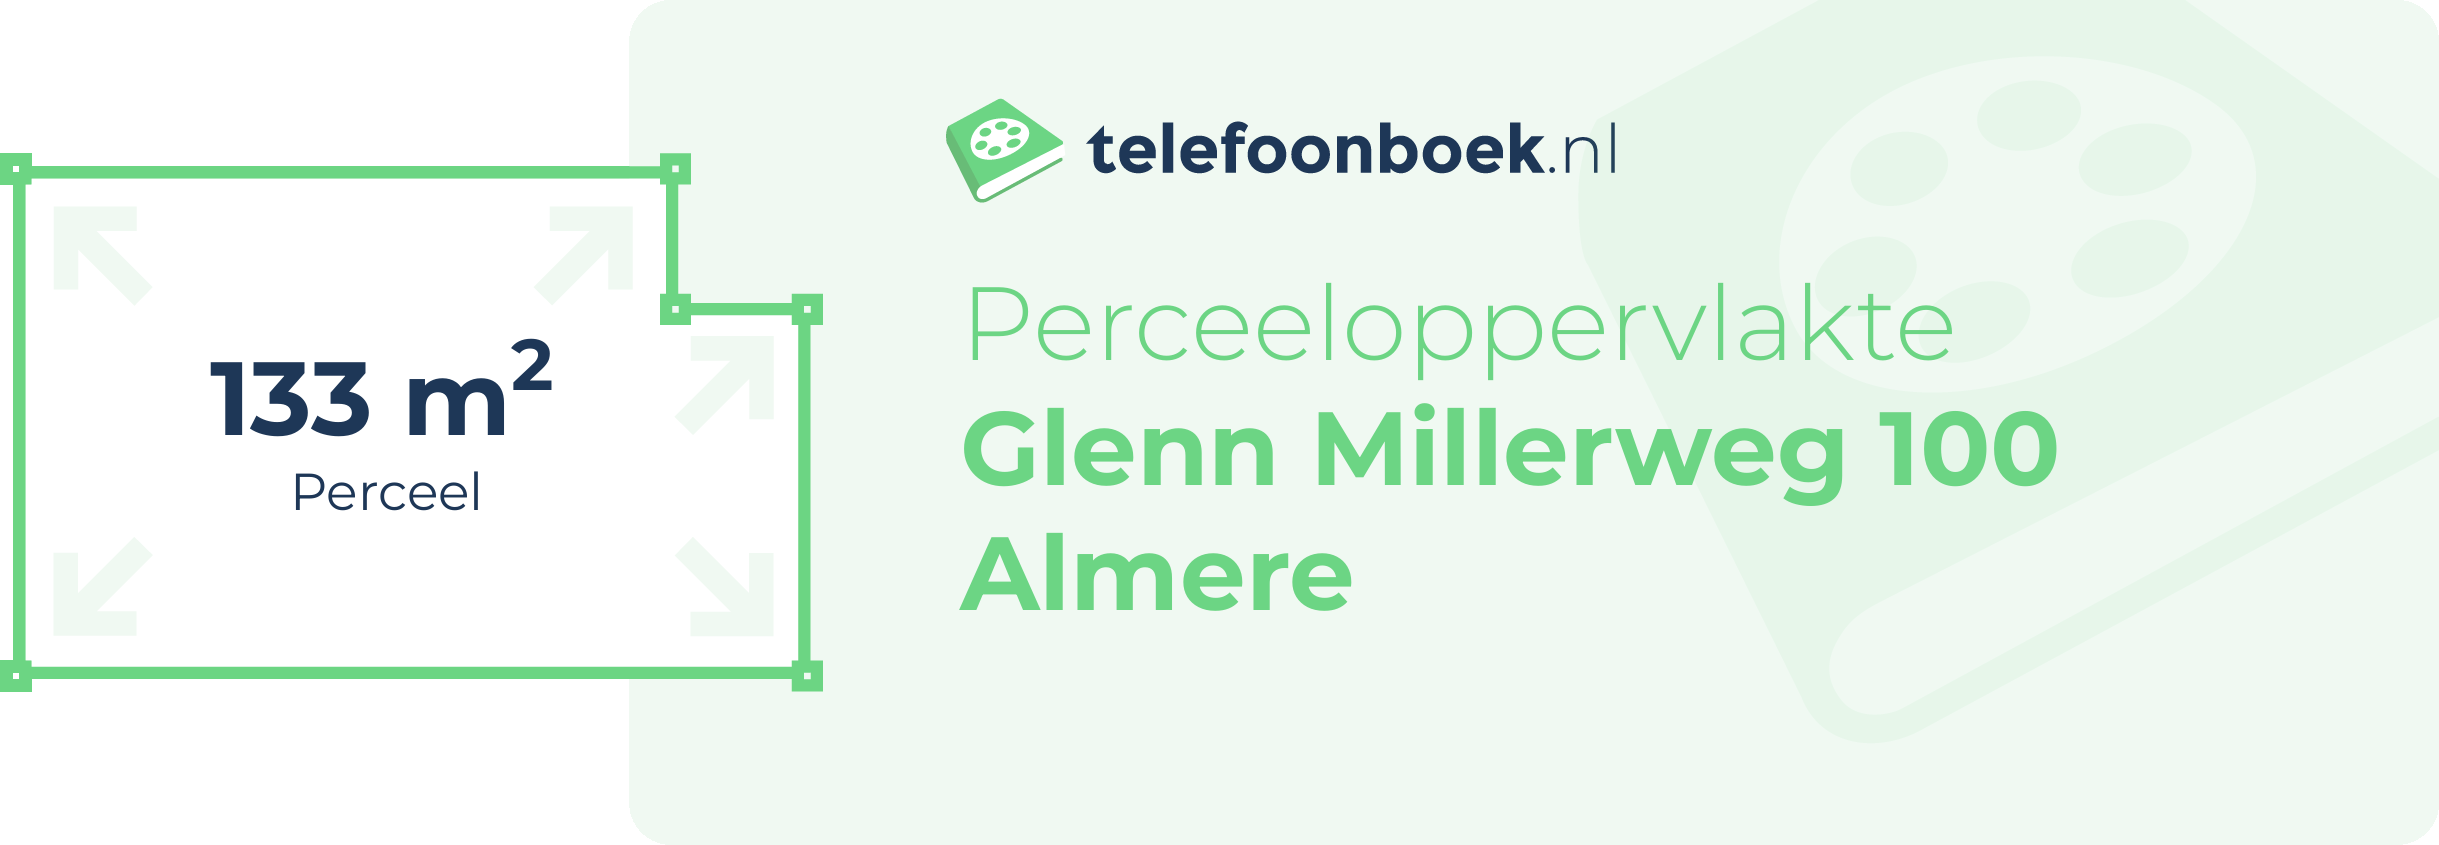 Perceeloppervlakte Glenn Millerweg 100 Almere